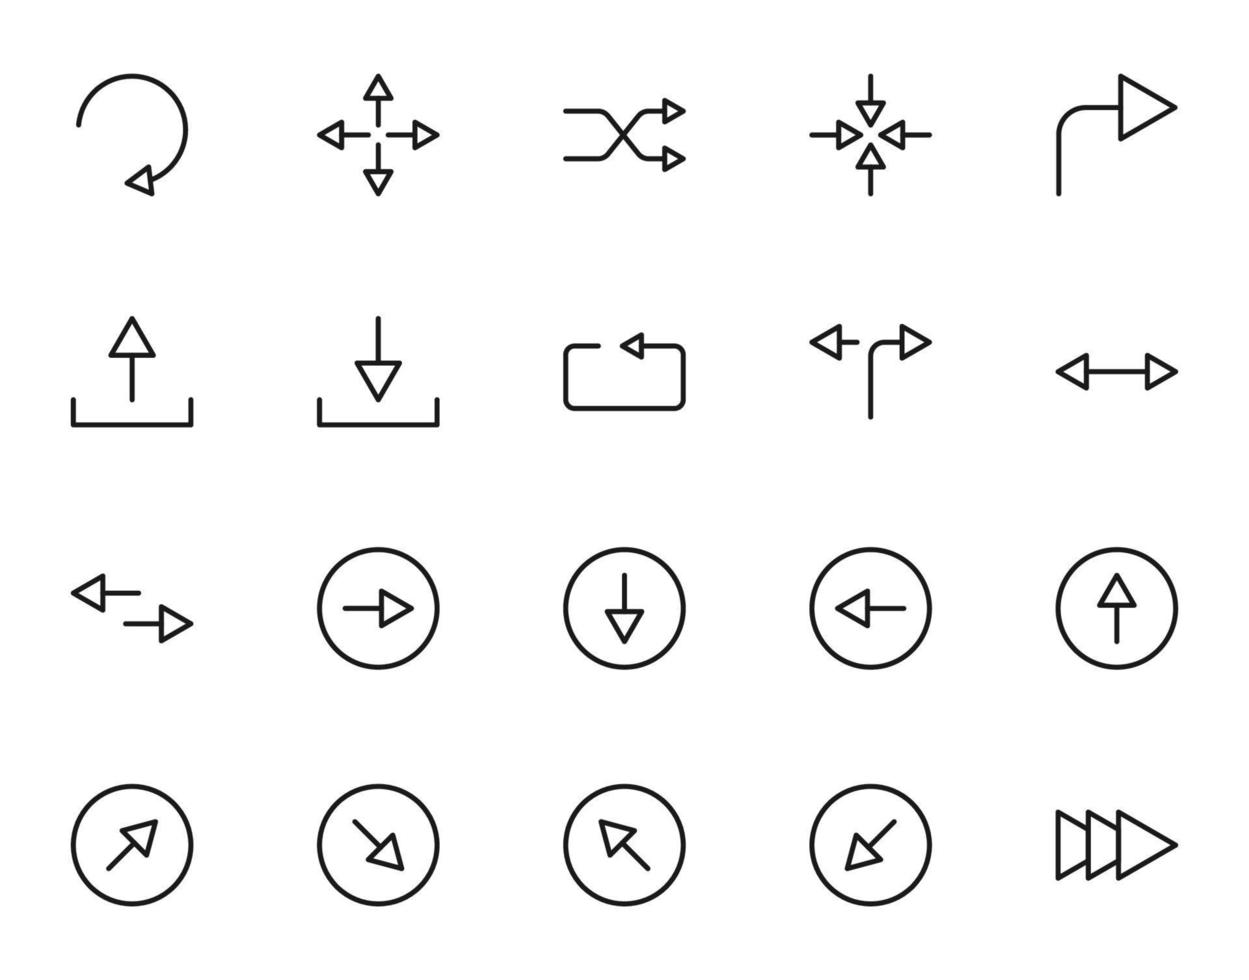 symboler, tecken, gränssnitt och internet koncept. samling av enkla ikoner av olika ikoner lämpliga för appar, webbplatser, artiklar etc vektor